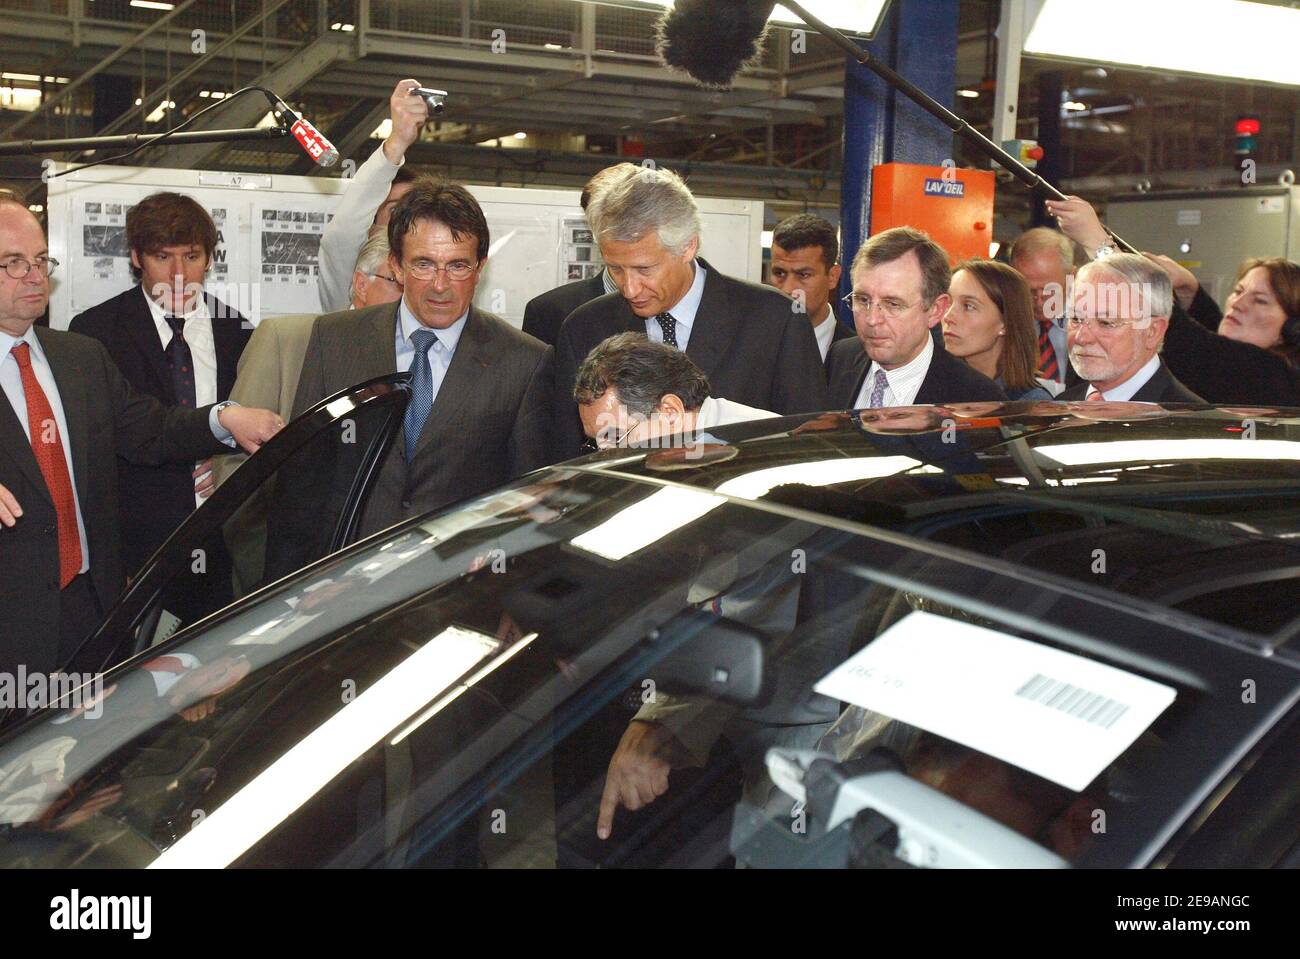 Le Premier ministre Dominique de Villepin visite l'usine PSA de Poissy, près de Paris, le 8 juin 2006. Photo par Edouard Bernaux/ABACAPRESS.COM Banque D'Images